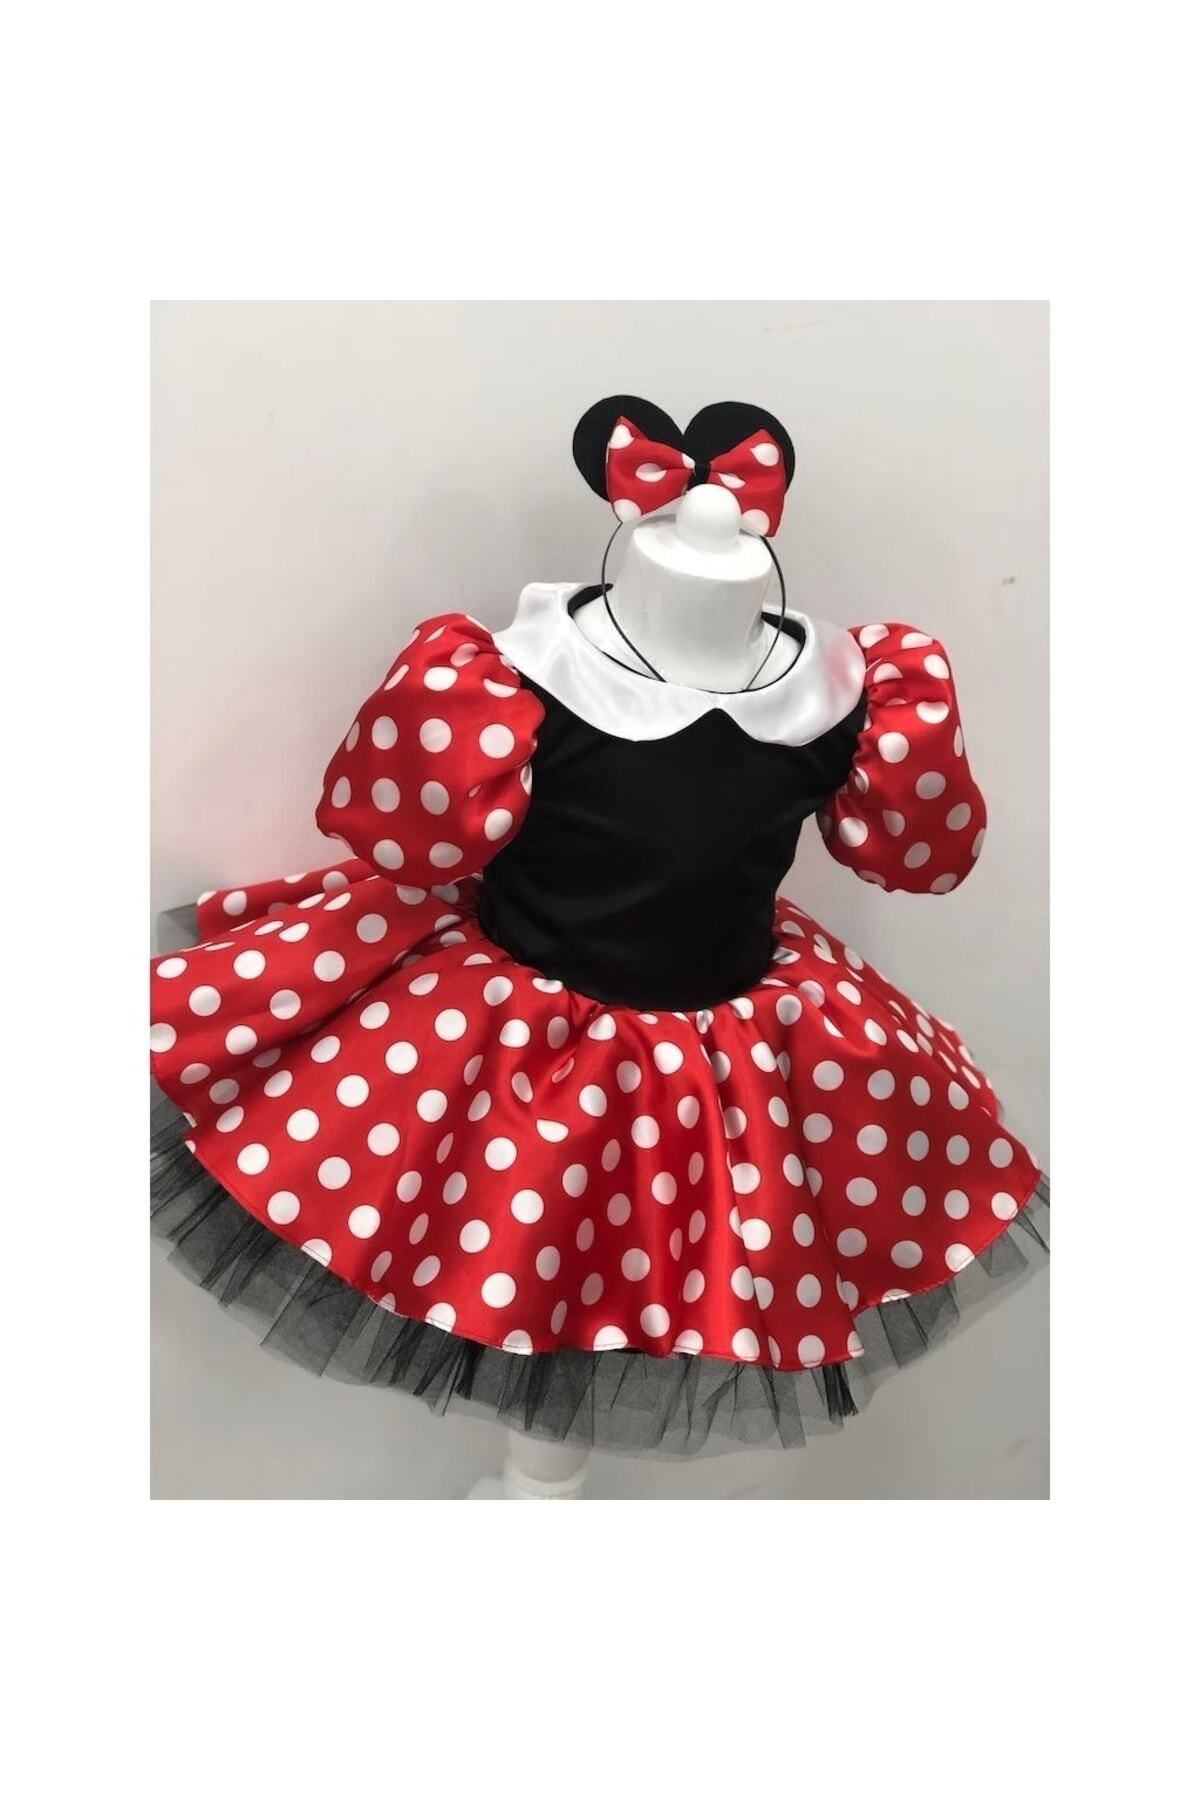 YAĞMUR KOStütüM Minnie Mouse Kız Çocuk Doğumgünü Elbisesi Parti Kostümü